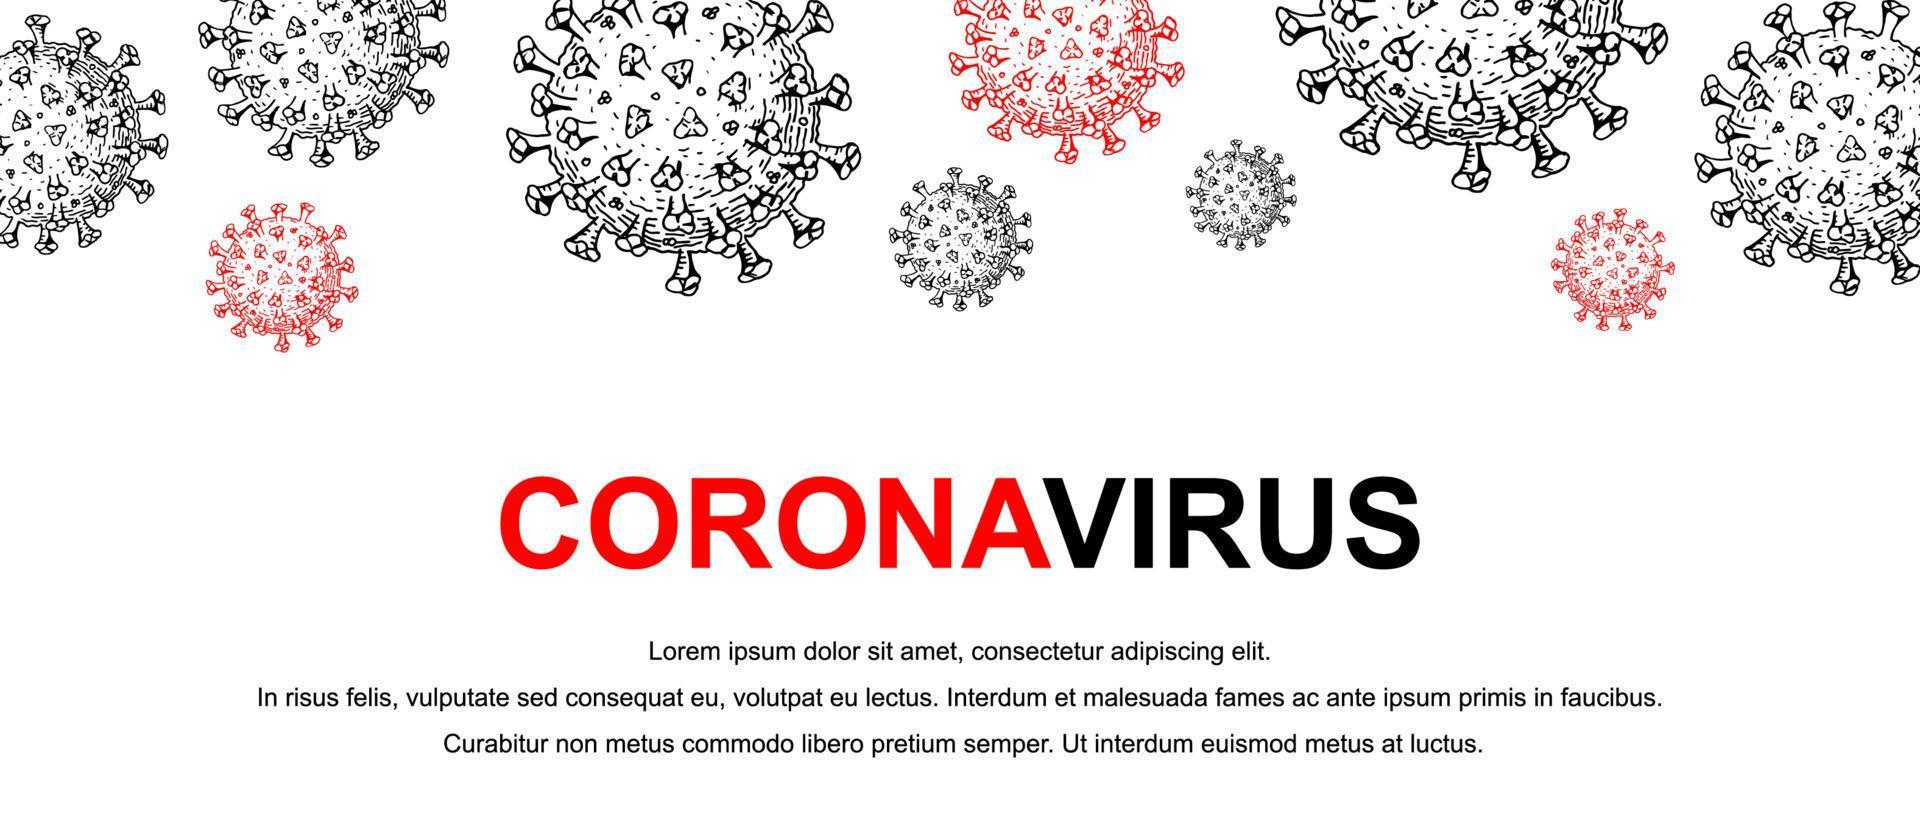 banner di coronavirus con elementi di design disegnati a mano. virus del microscopio da vicino. illustrazione vettoriale in stile schizzo. covid-2019